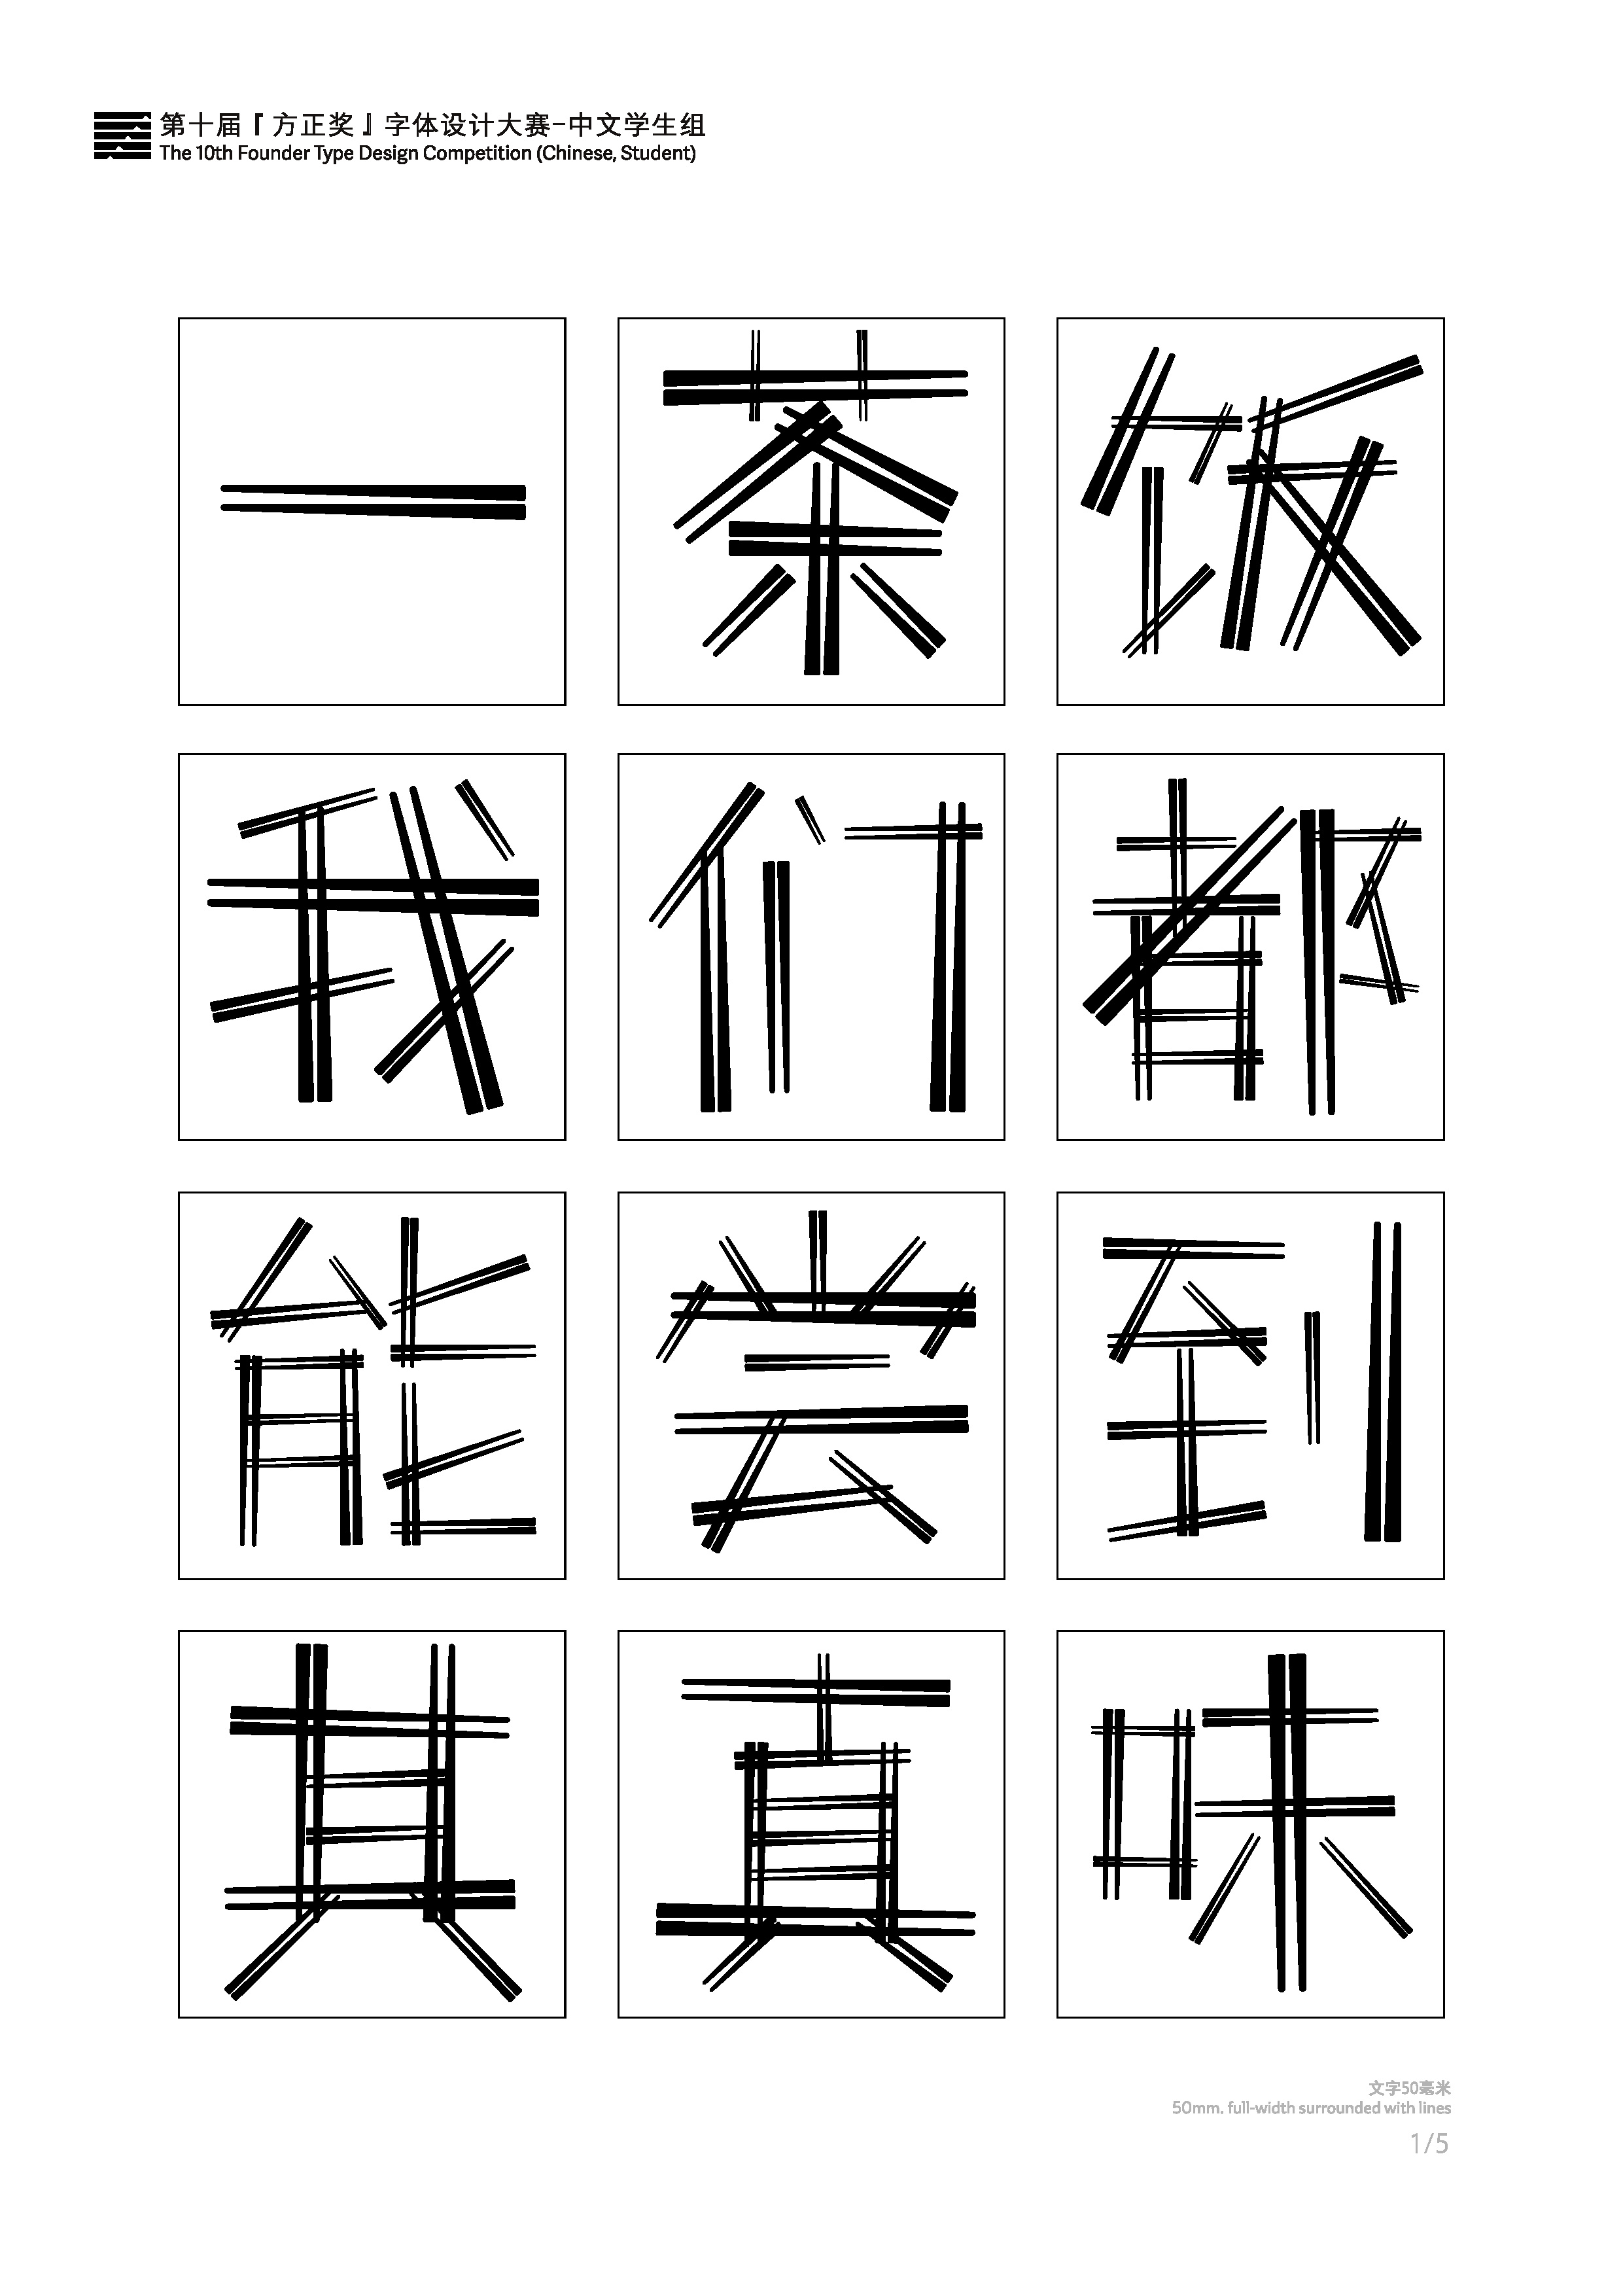 字创未来：传承汉字文化精髓 探索文字设计未来 第十二届『方正奖』设计大赛正式启动